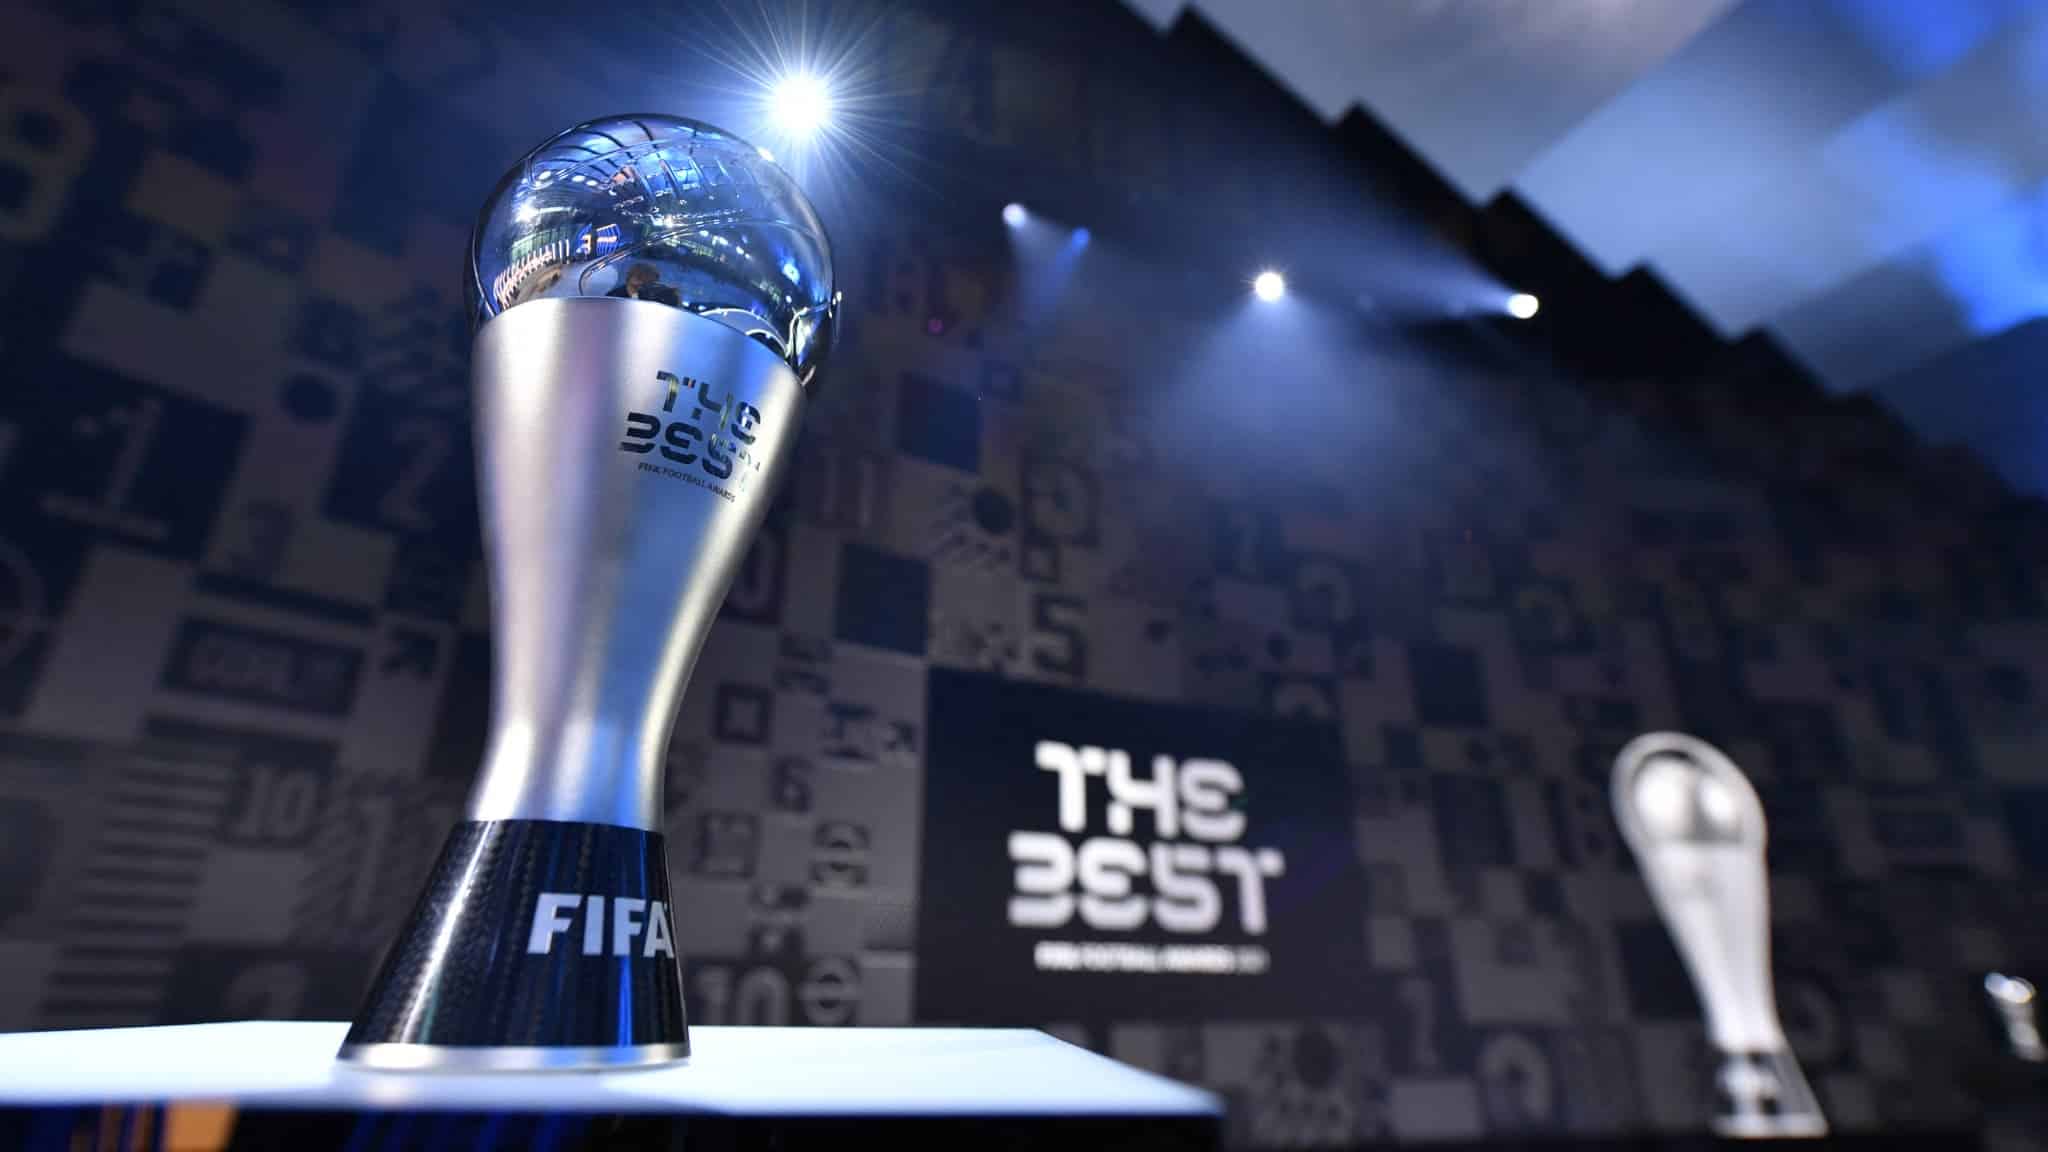 Le trophee The Best 2021 de la Fifa le 17 janvier 2022 1217157